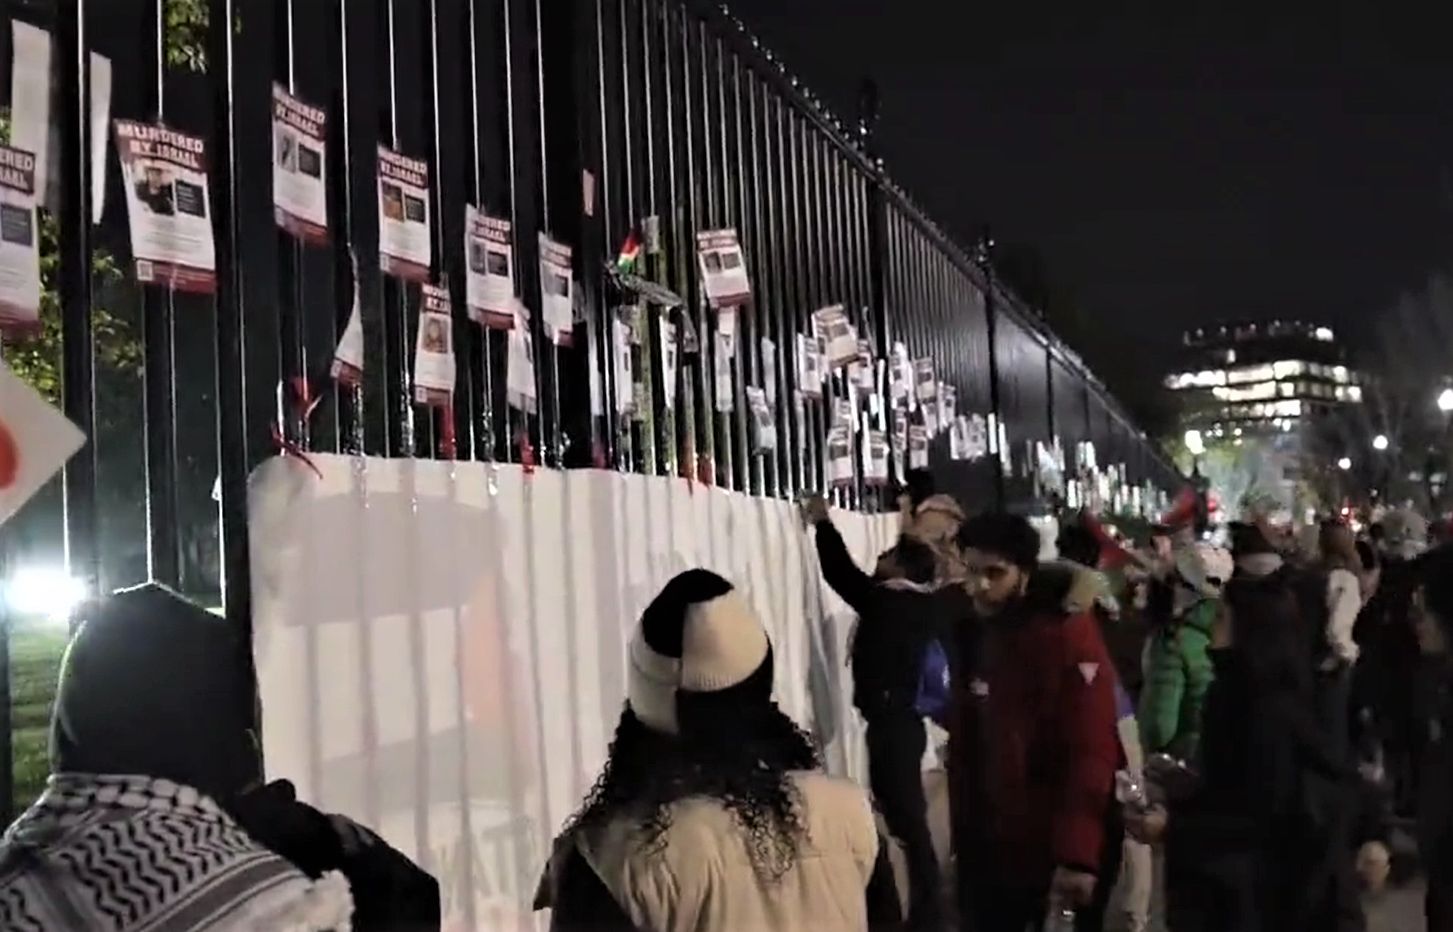 Antyizraelskie protesty pod Białym Domem. Demonstranci próbowali sforsować bramę